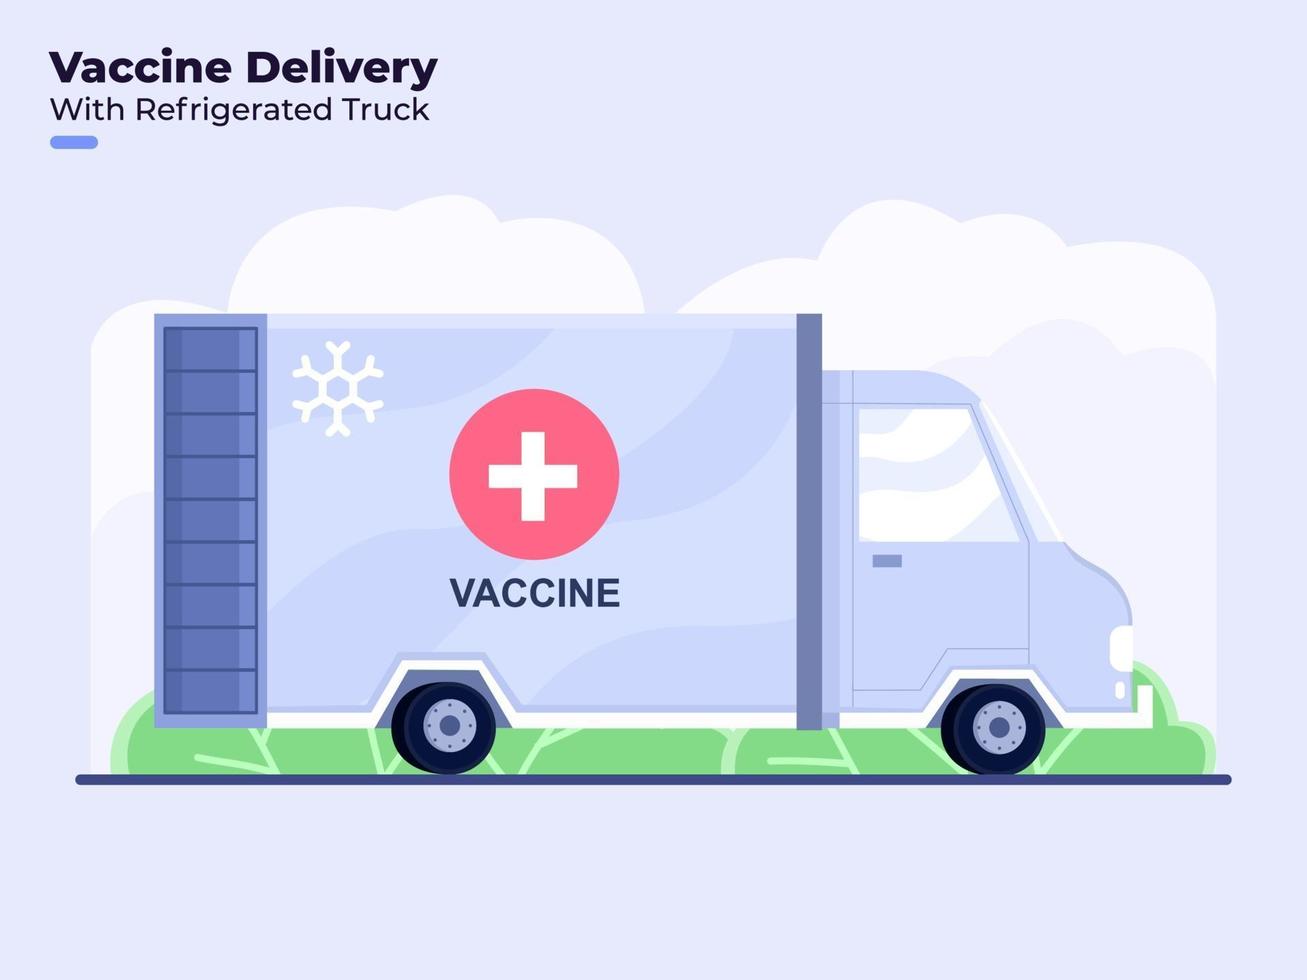 ilustração em estilo simples da aplicação ou distribuição da vacina contra o coronavírus covid-19 com caminhão refrigerado vetor